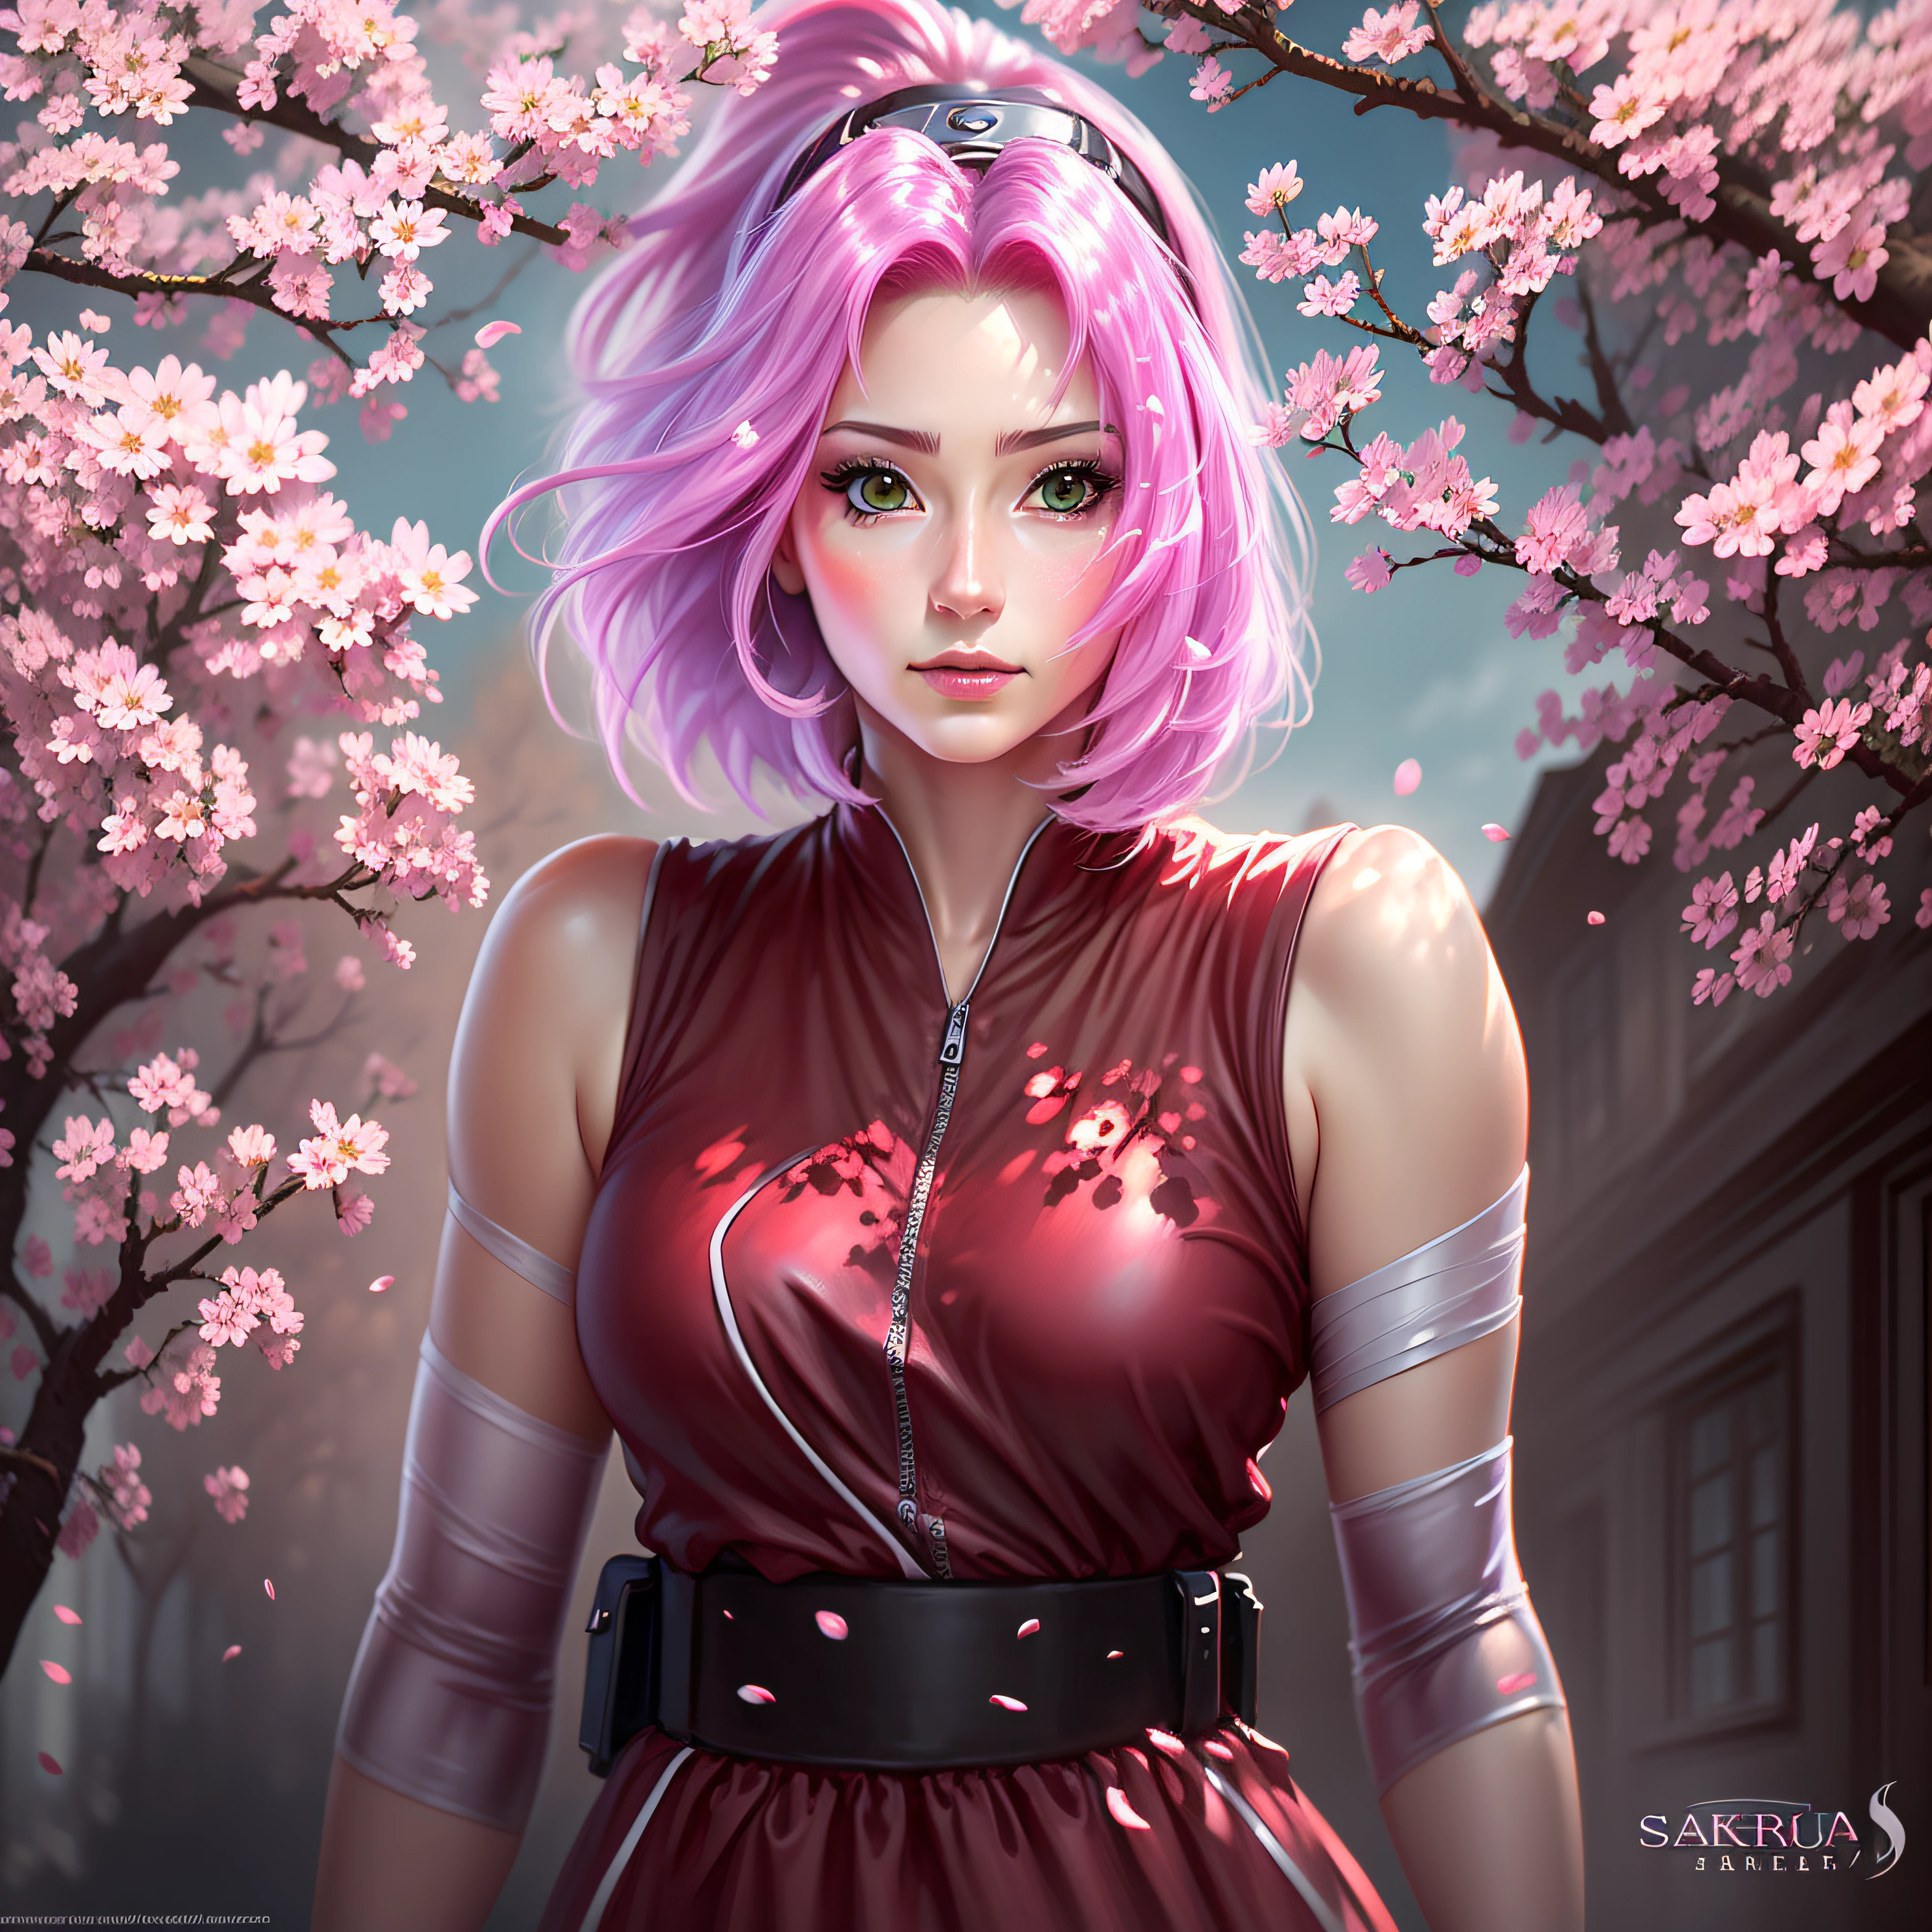 Sakura belle et grande anime cheveux courts super réaliste et bien détaillé